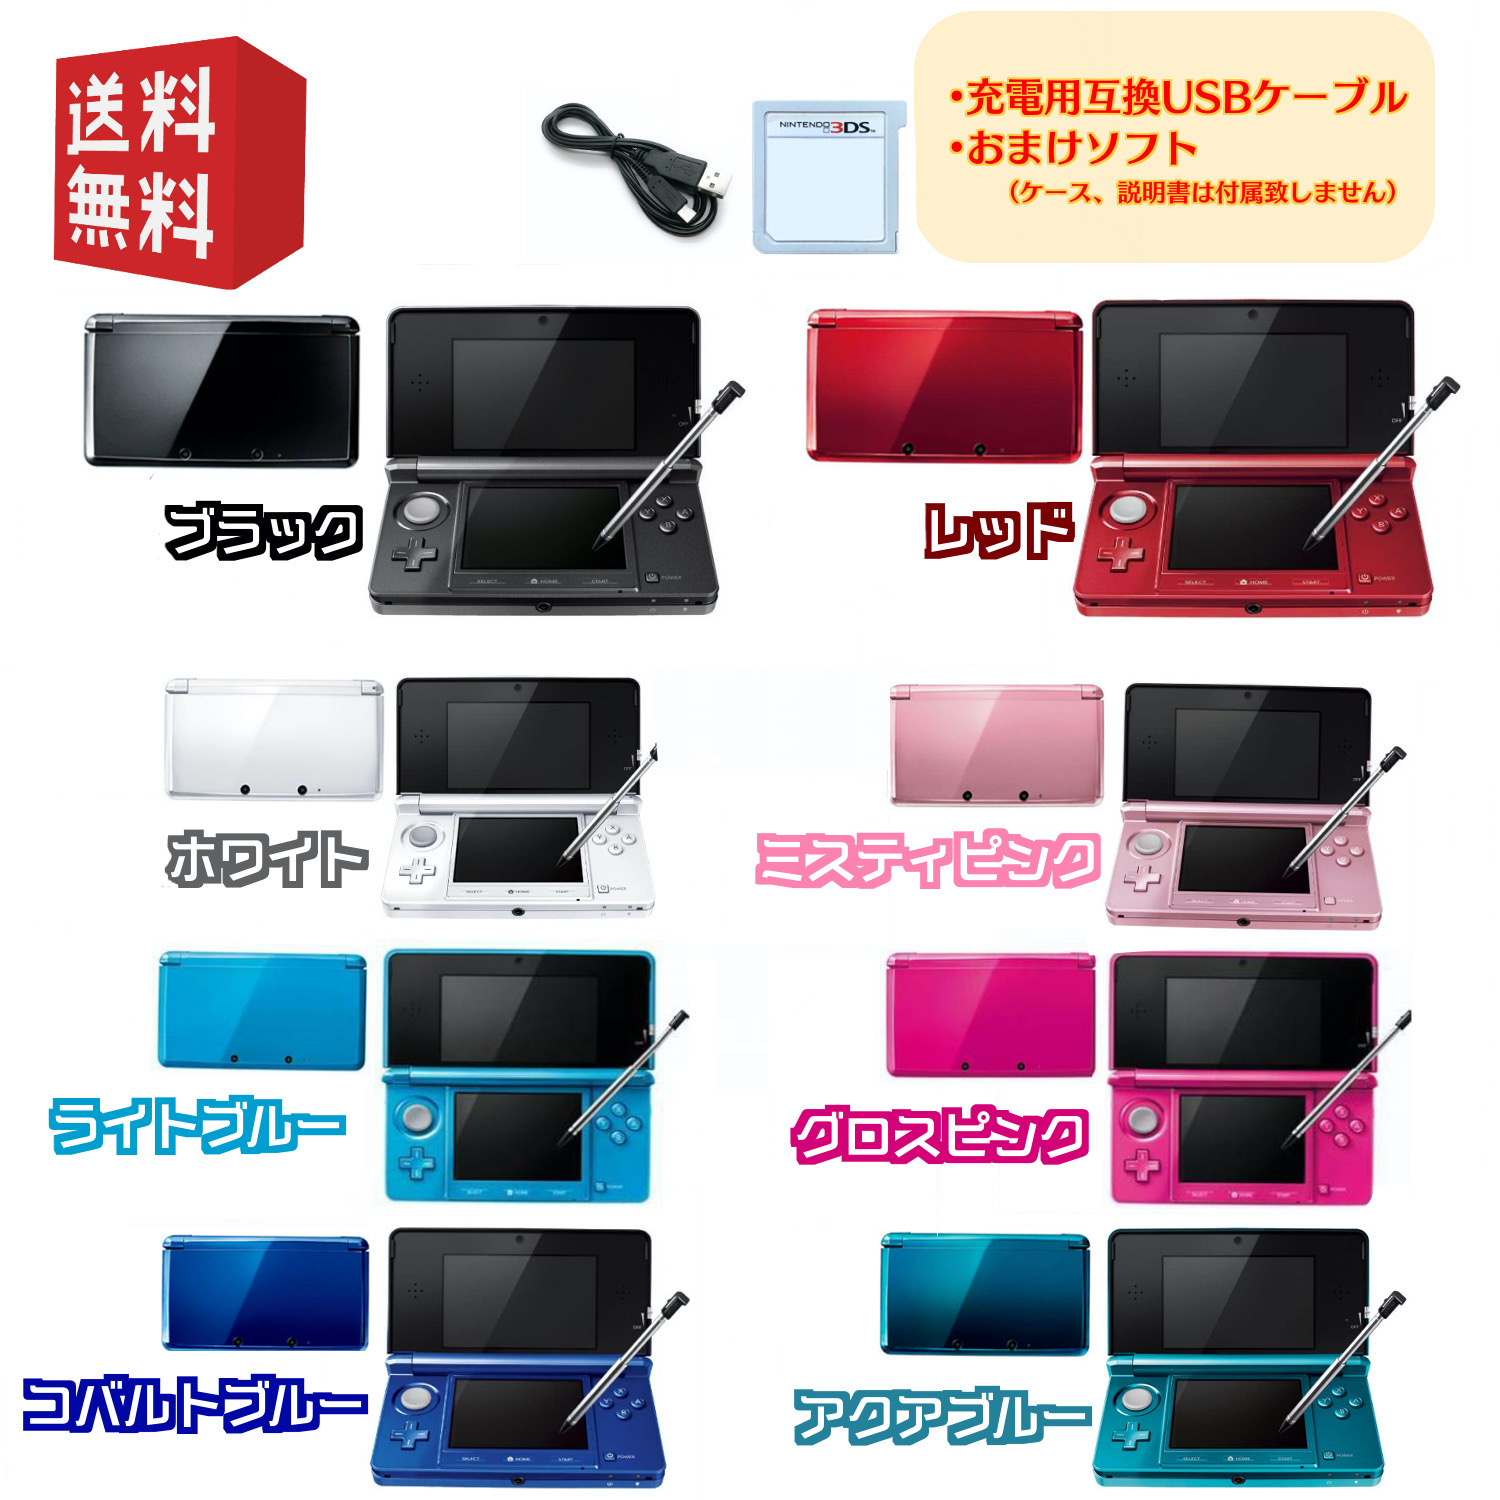 3DS 本体 【すぐ遊べるセット】※USBケーブル・おまけソフト付 選べるカラー8色 ☆キャンペーン対象商品 ☆ :